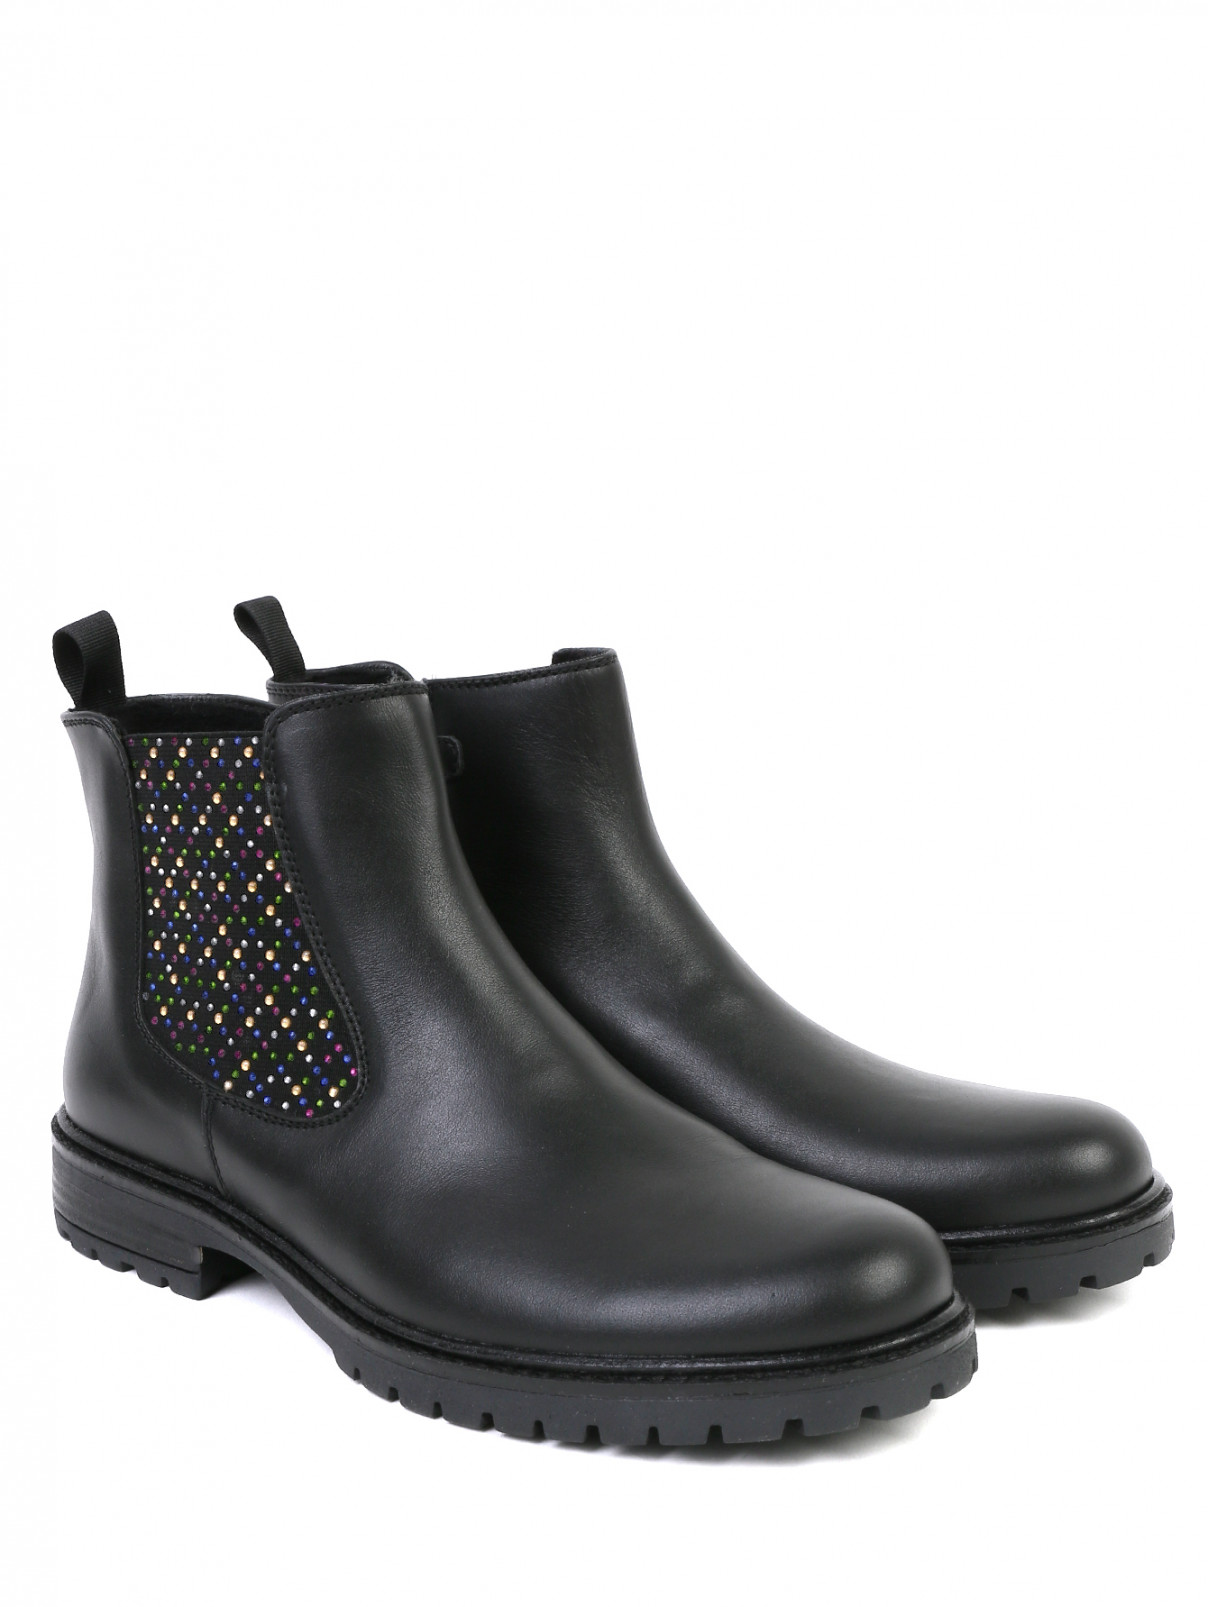 Ботинки из гладкой кожи с декоративной отделкой Zecchino d`Oro  –  Общий вид  – Цвет:  Черный